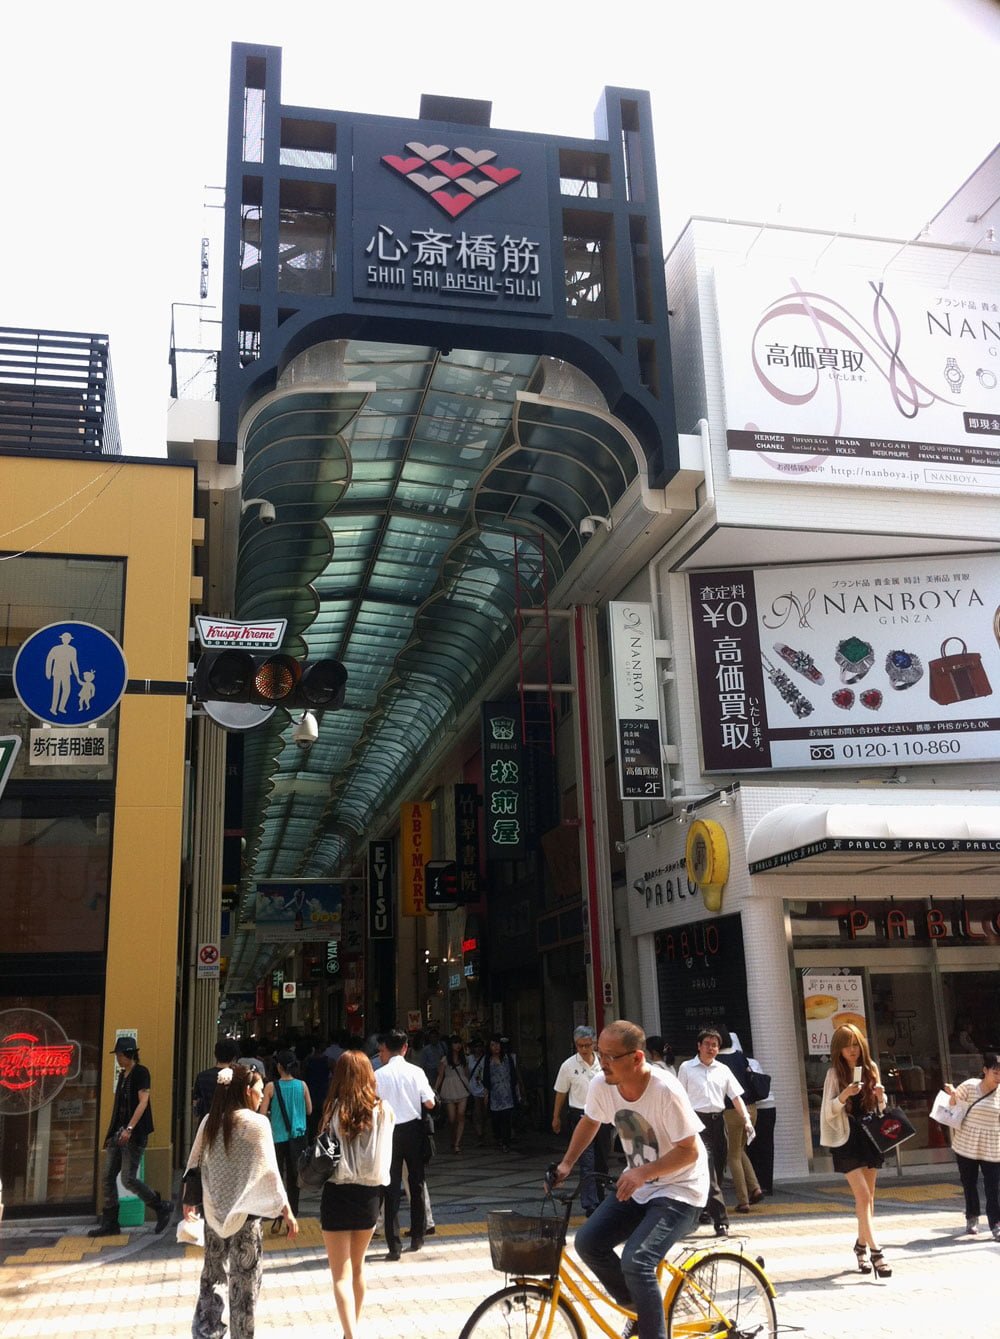 Osaka Shinsaibashi Shopping Street Covered